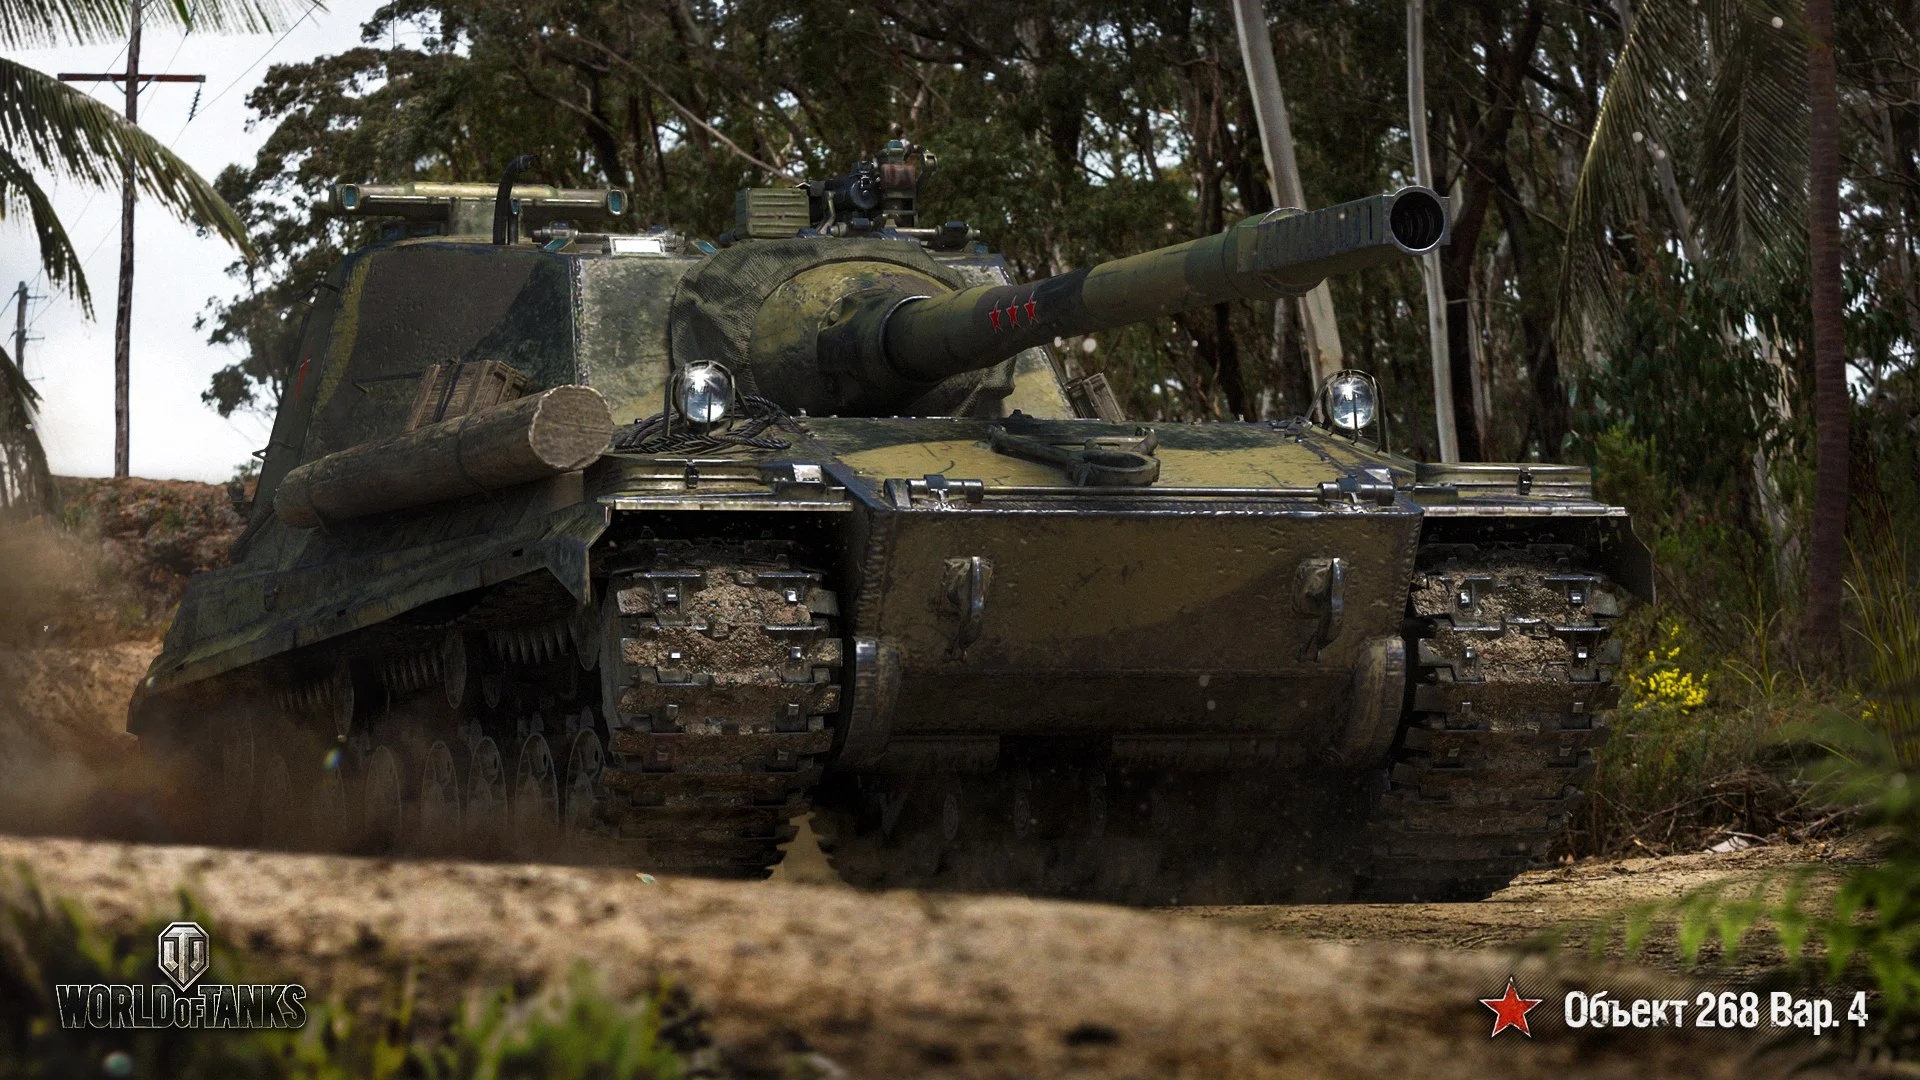 Гайд по World of Tanks 1.0. 5 лучших прокачиваемых ПТ-САУ 10 уровня - фото 2